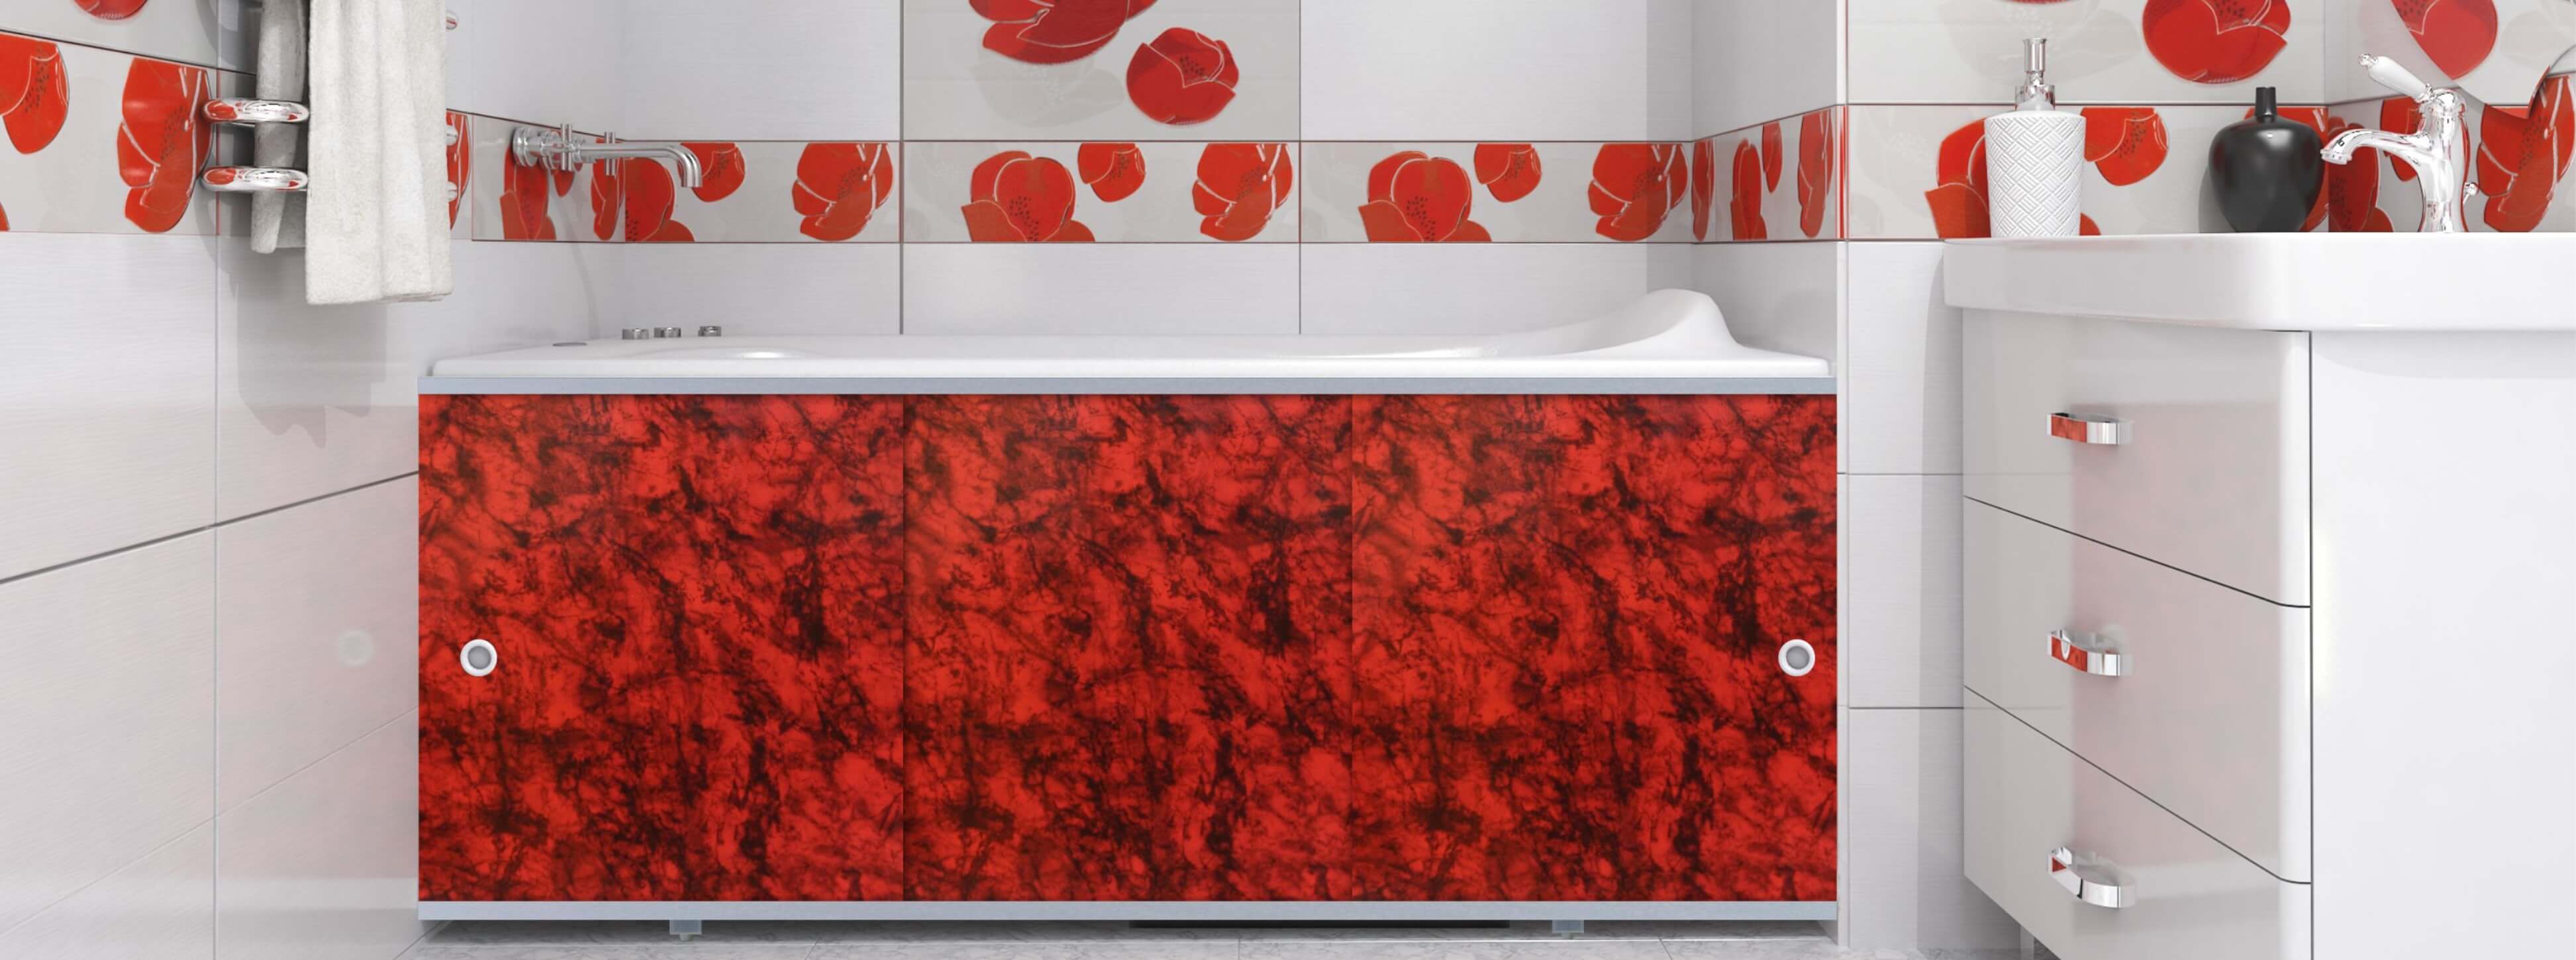 Экраны для ванны (панели) в ванную - новость ARTiss